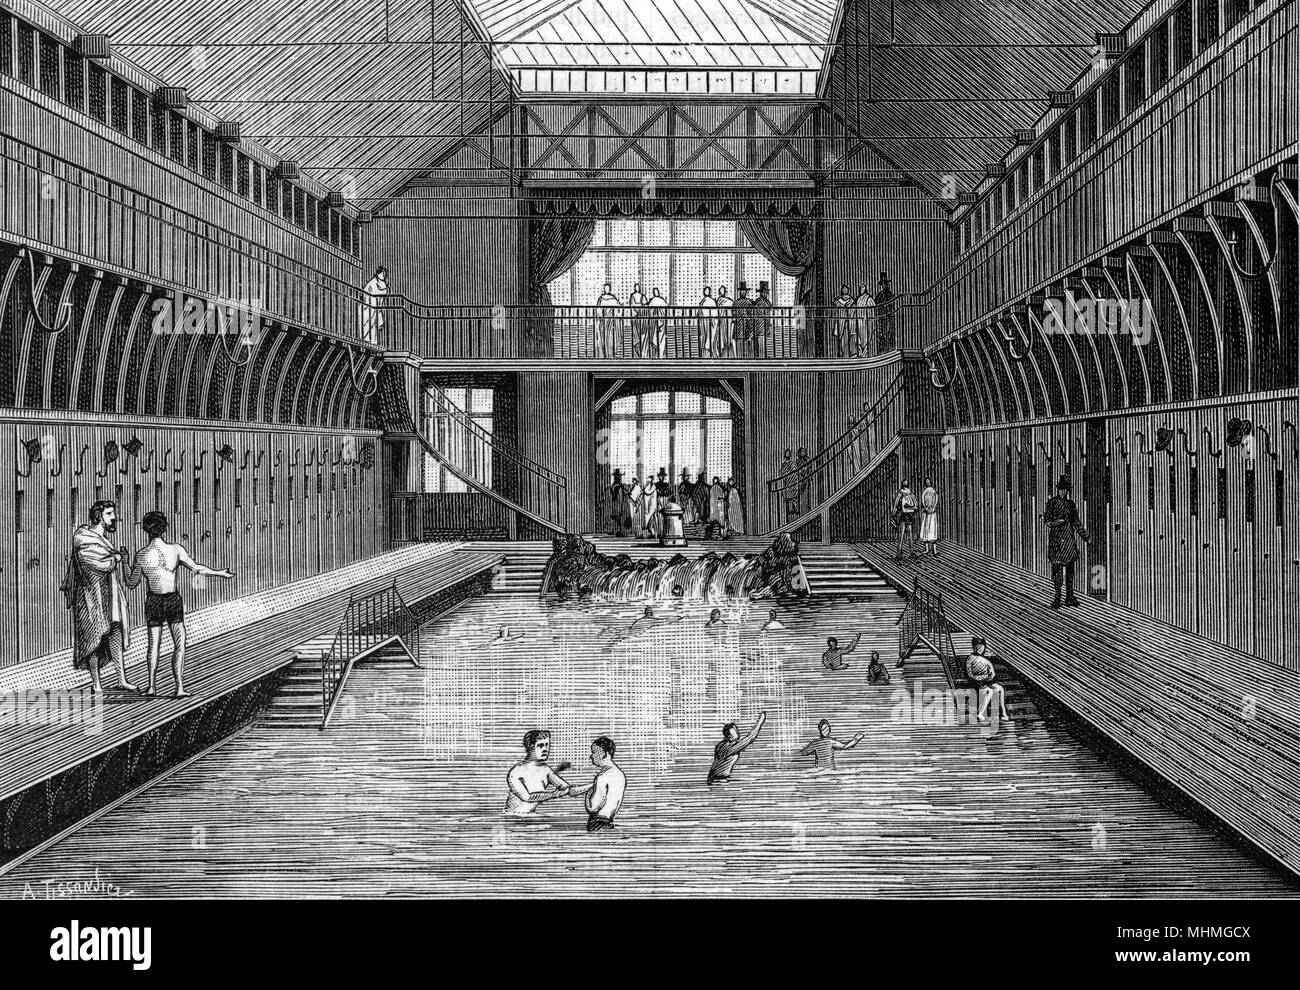 Blick in das Innere einer kostengünstigen öffentlichen Schwimmbad in der rue Chateau-Landon, Paris, Frankreich. Datum: 1884 Stockfoto